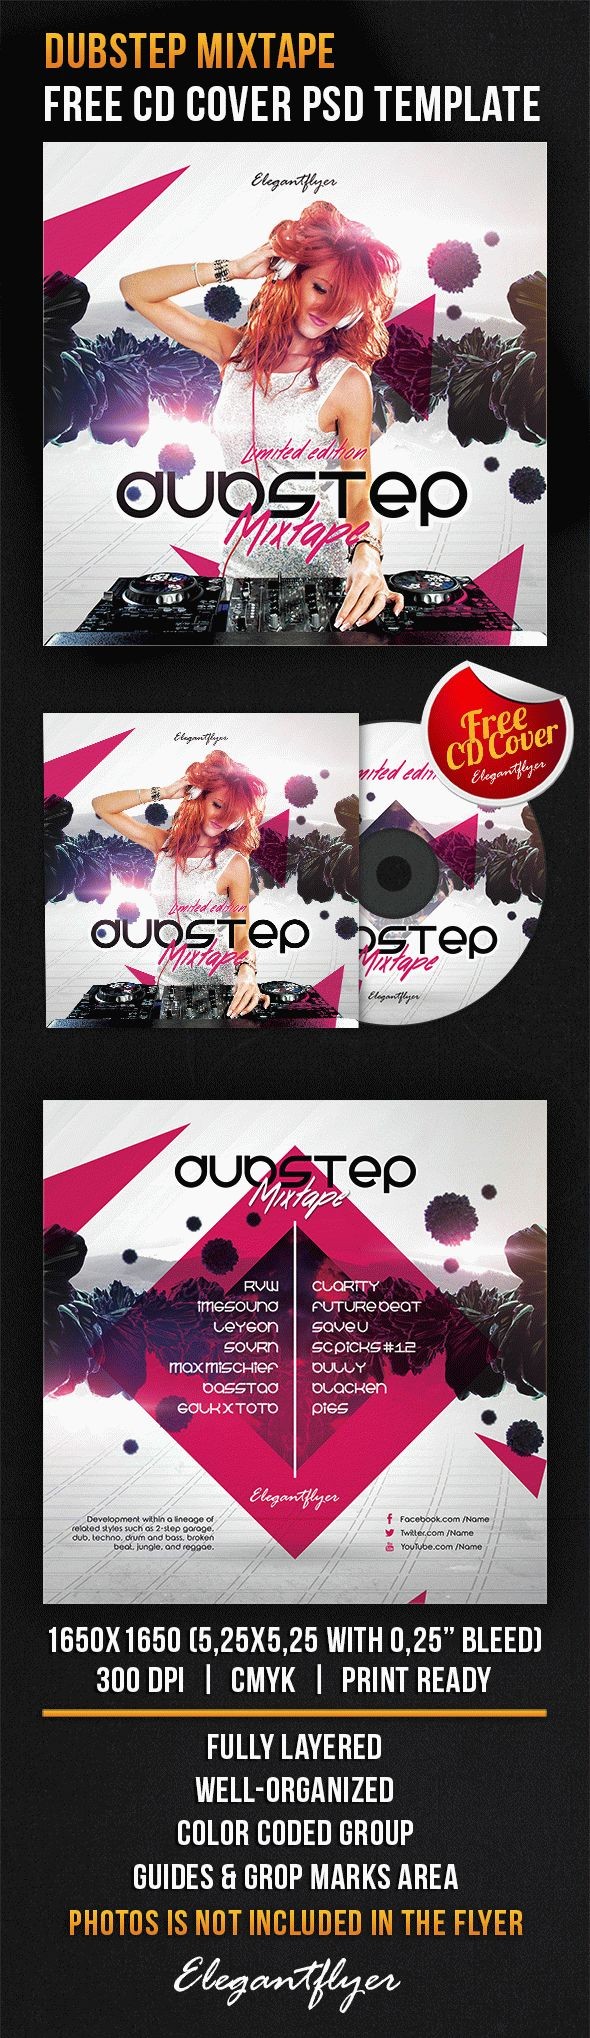 Dubstep Mixtape by ElegantFlyer